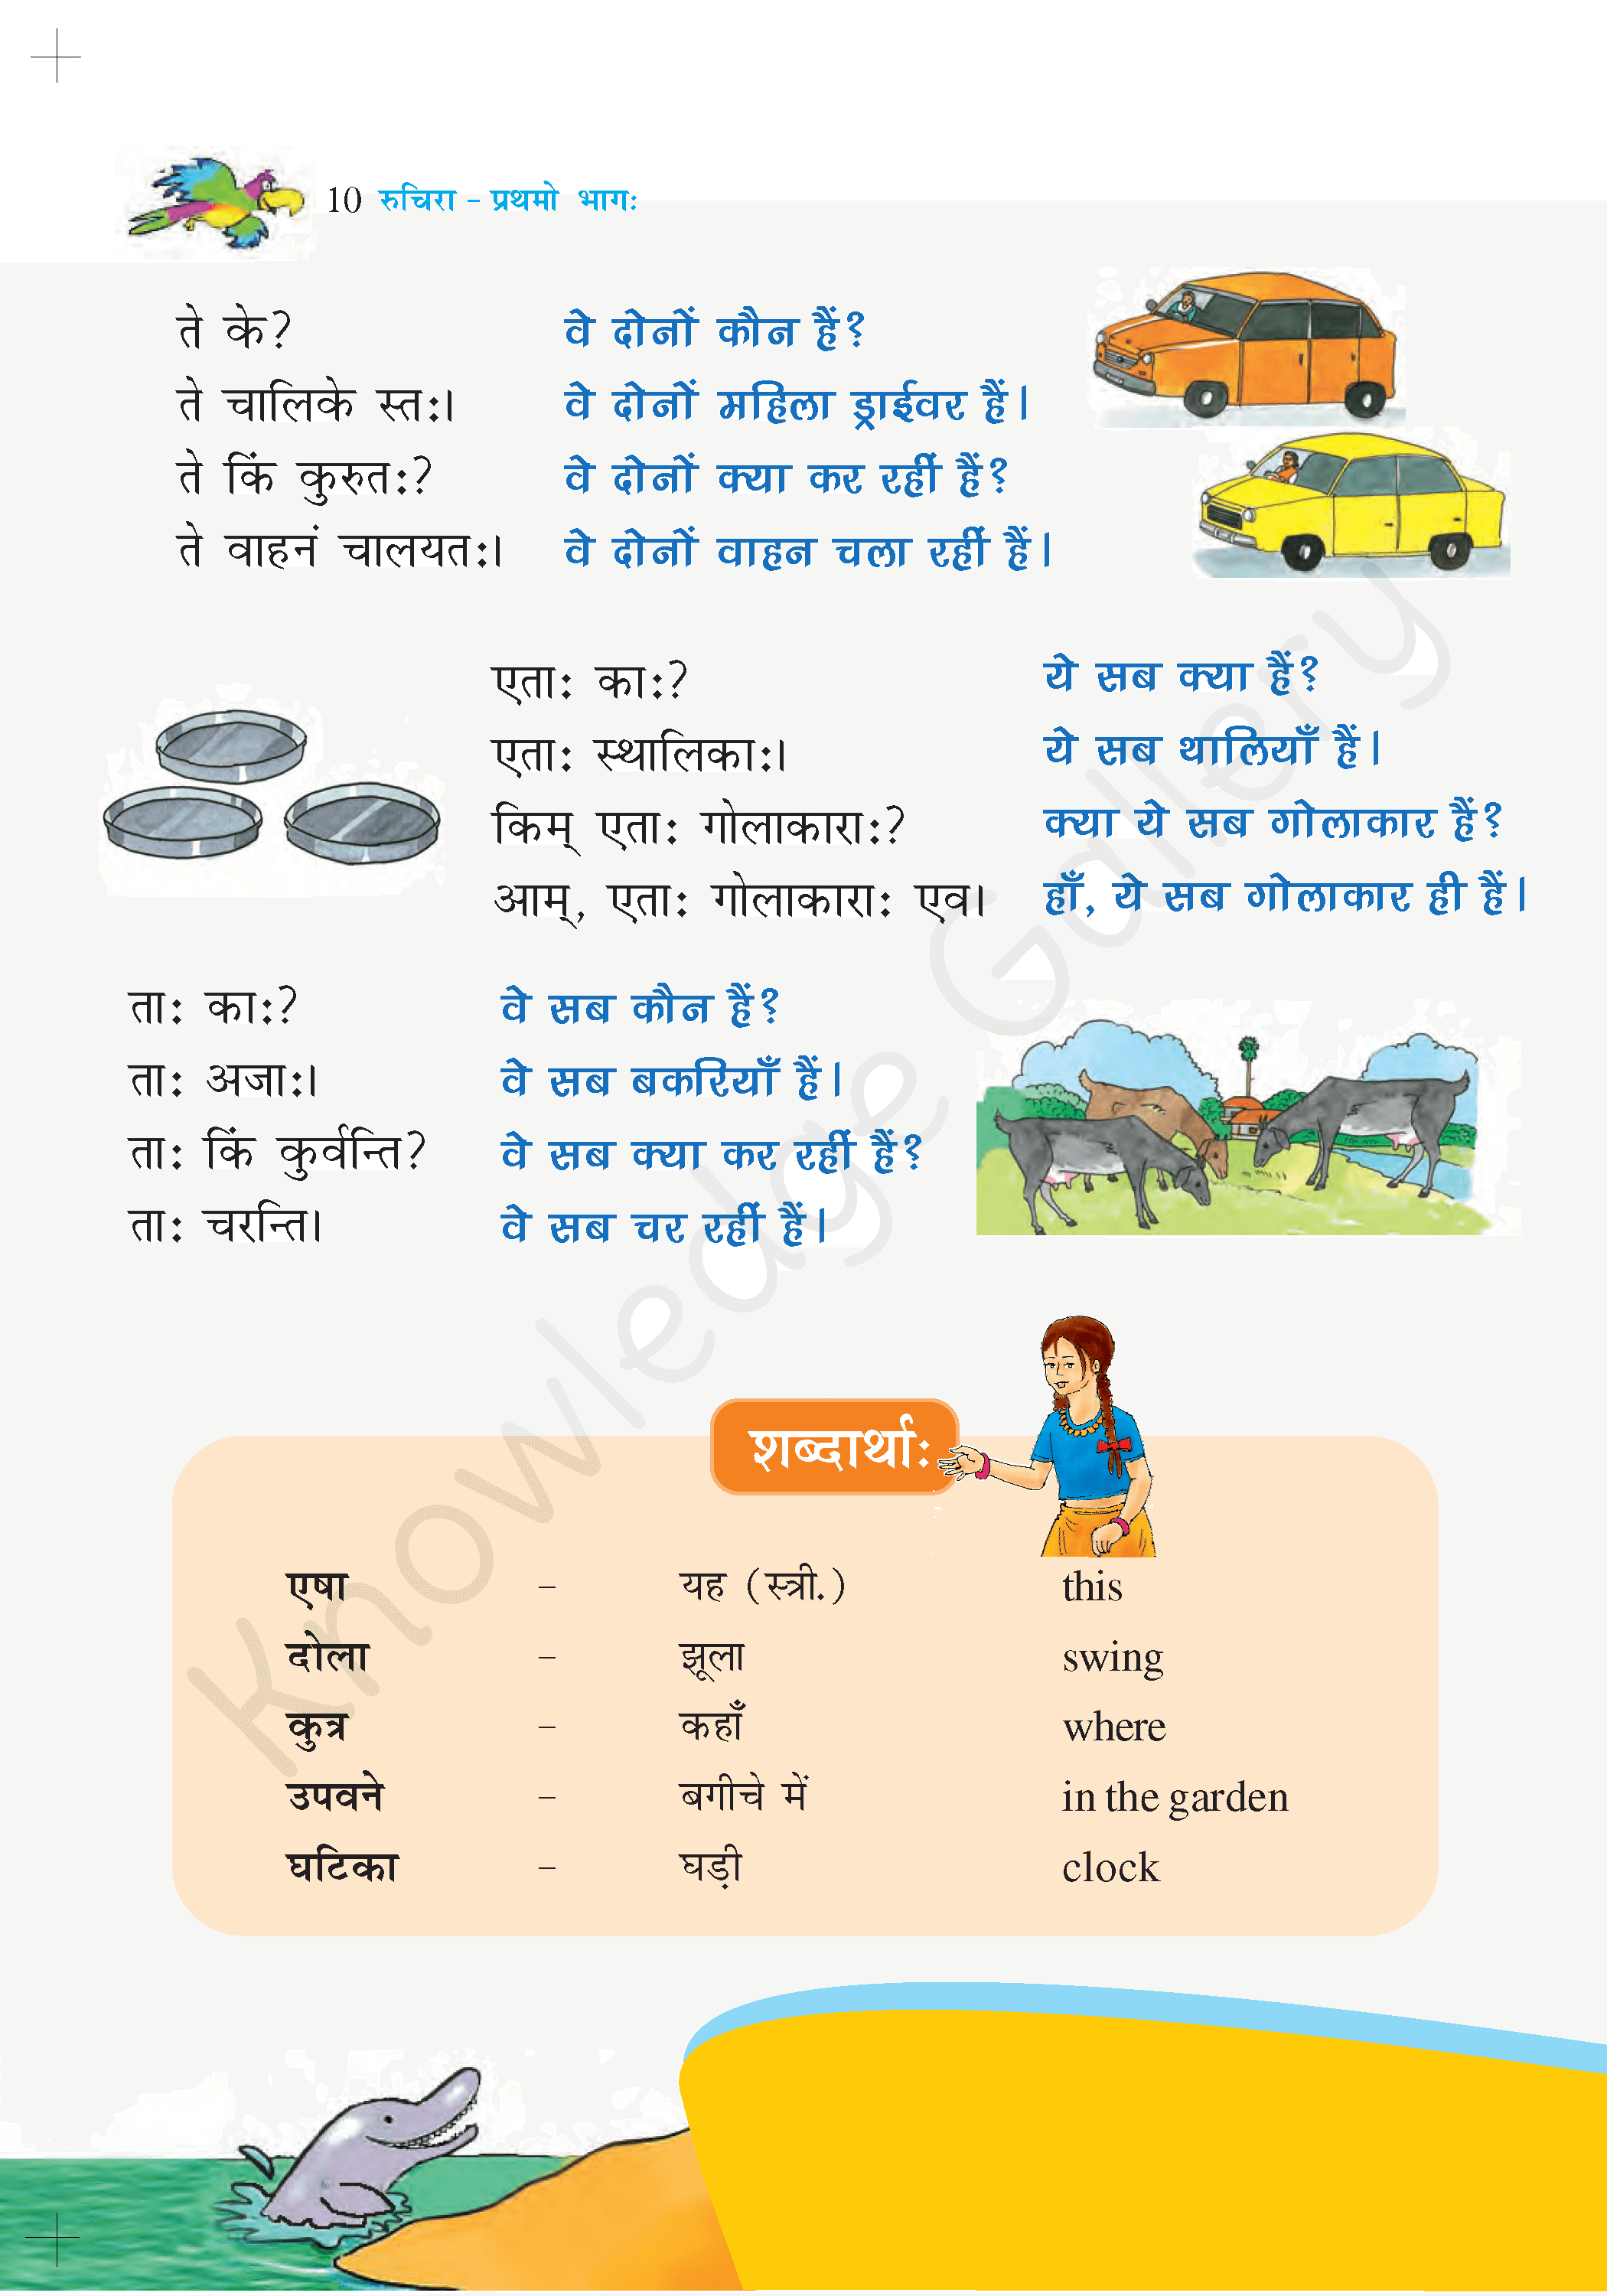 NCERT Solution For Class 6 Sanskrit Chapter 2 part 2